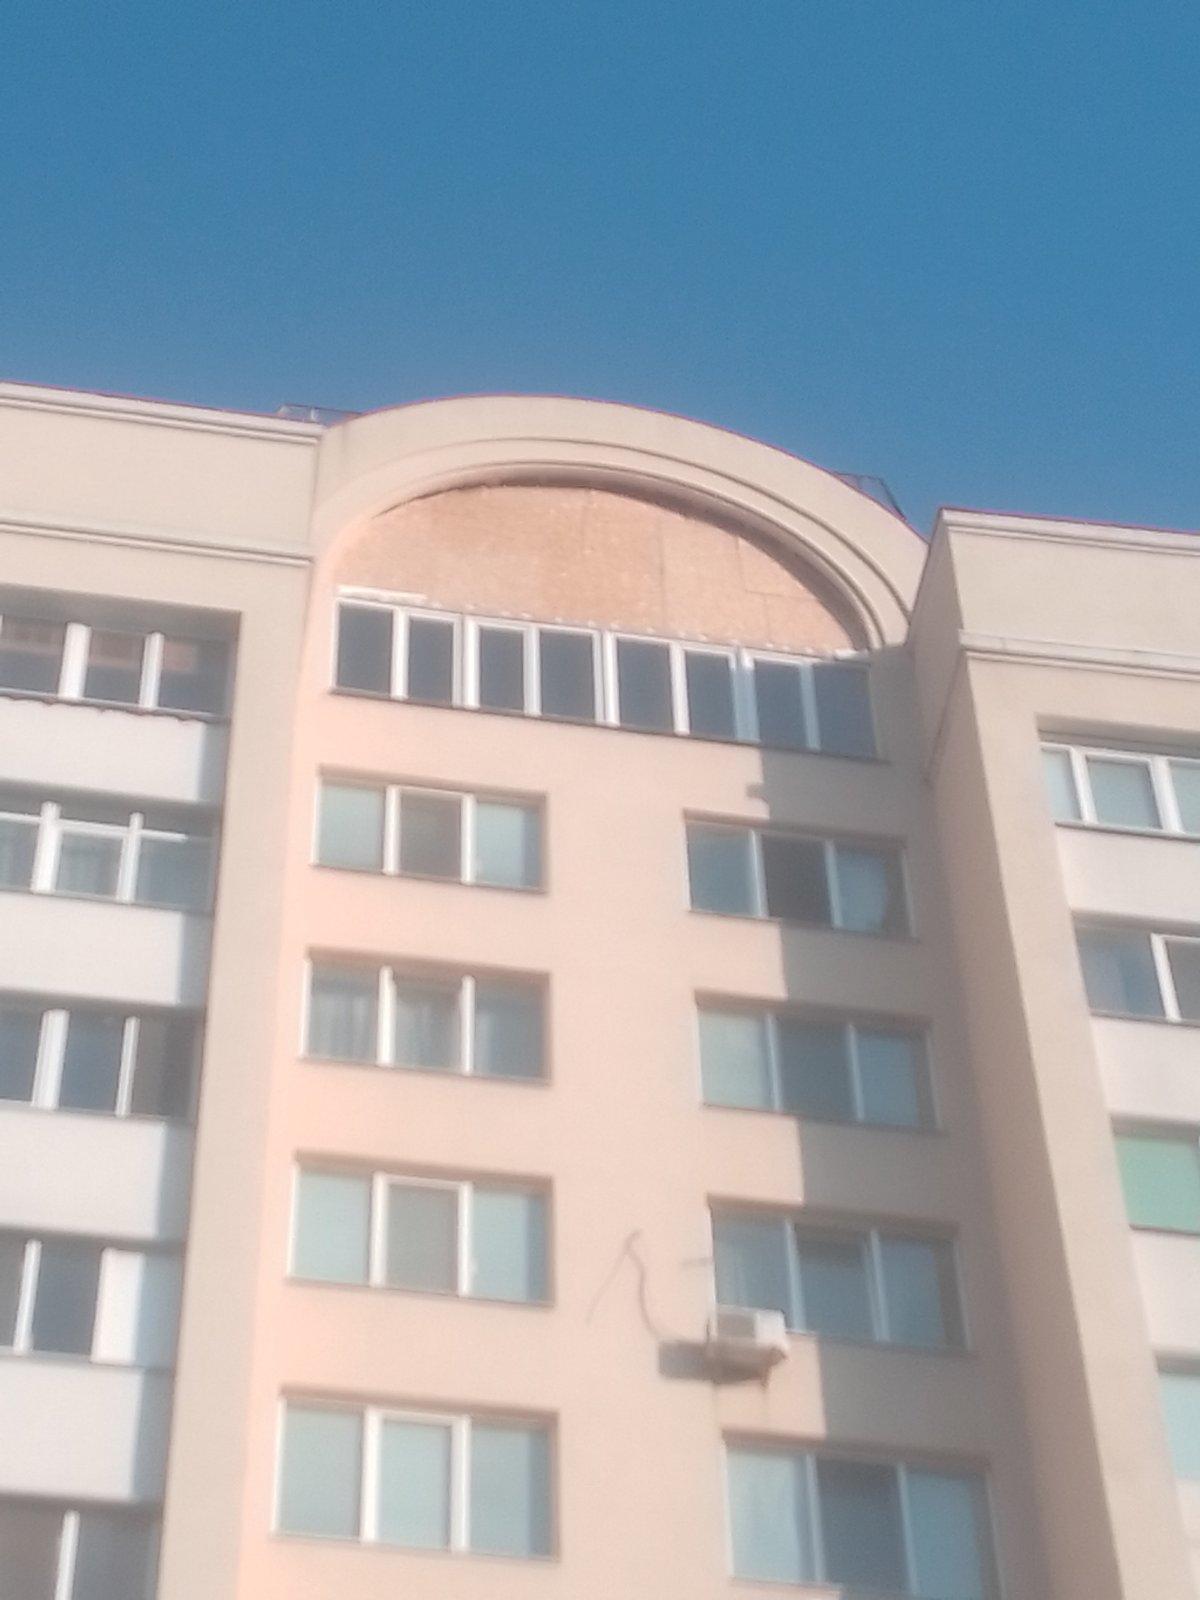 Зашивка ОСБ плитами большого арочного окна на крыше дома в Николаеве